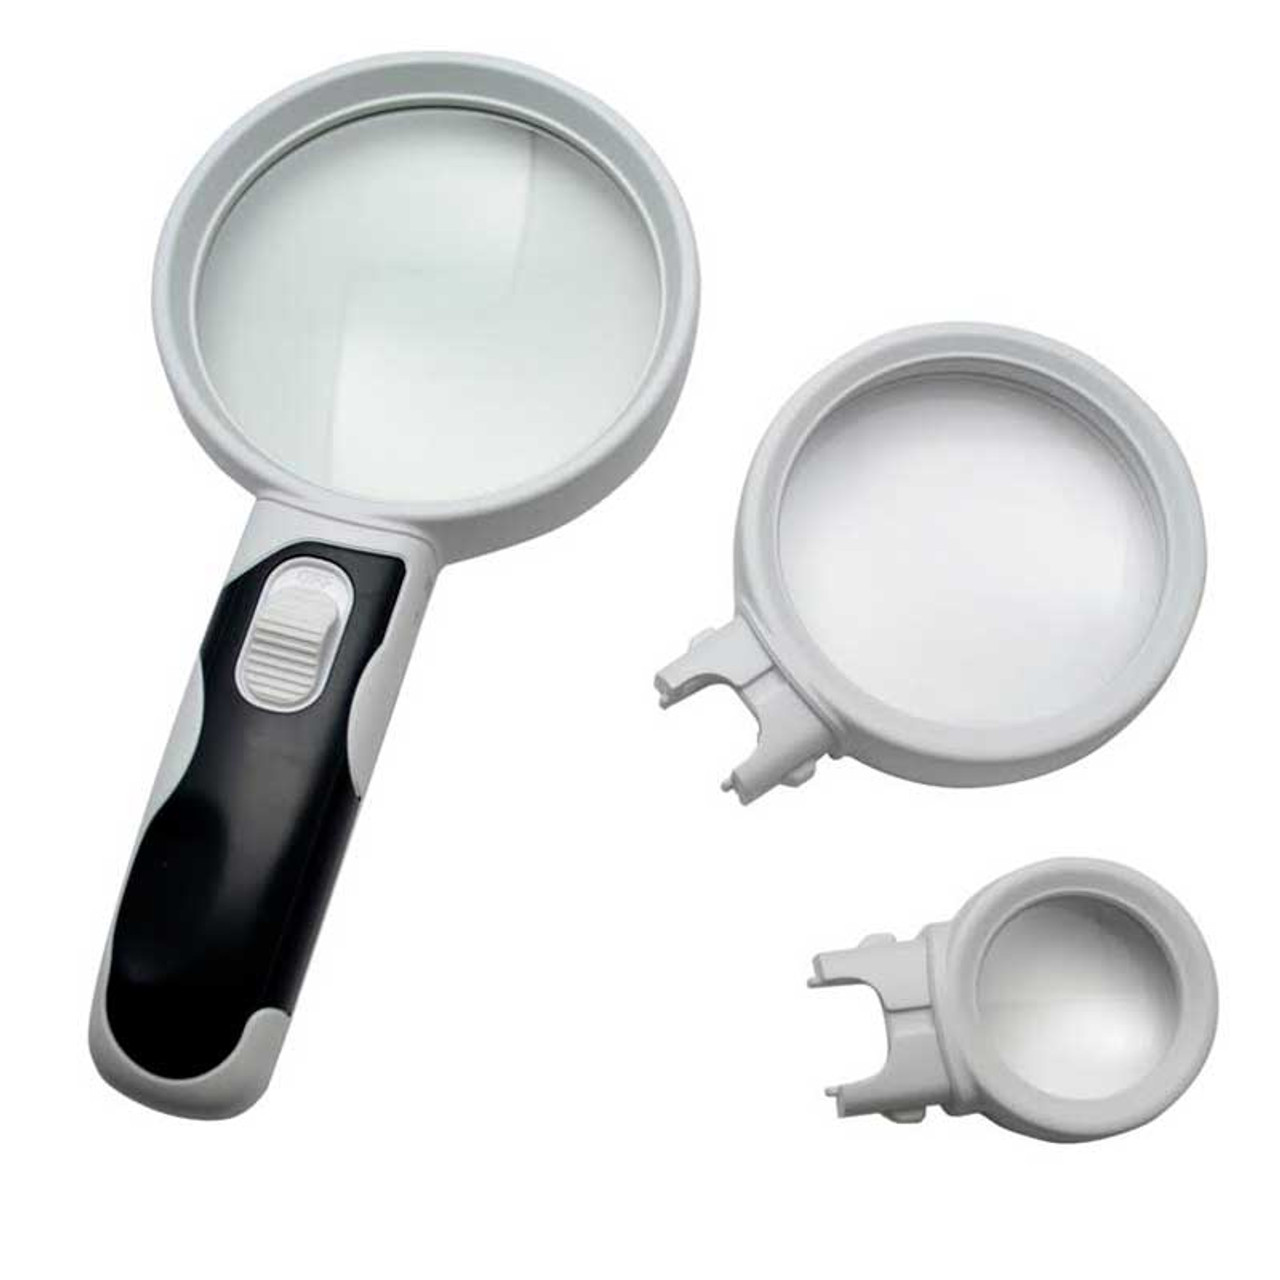 LED Illuminated Magnifying Glass Set 3-Lens 2.5X + 5X + 16X 